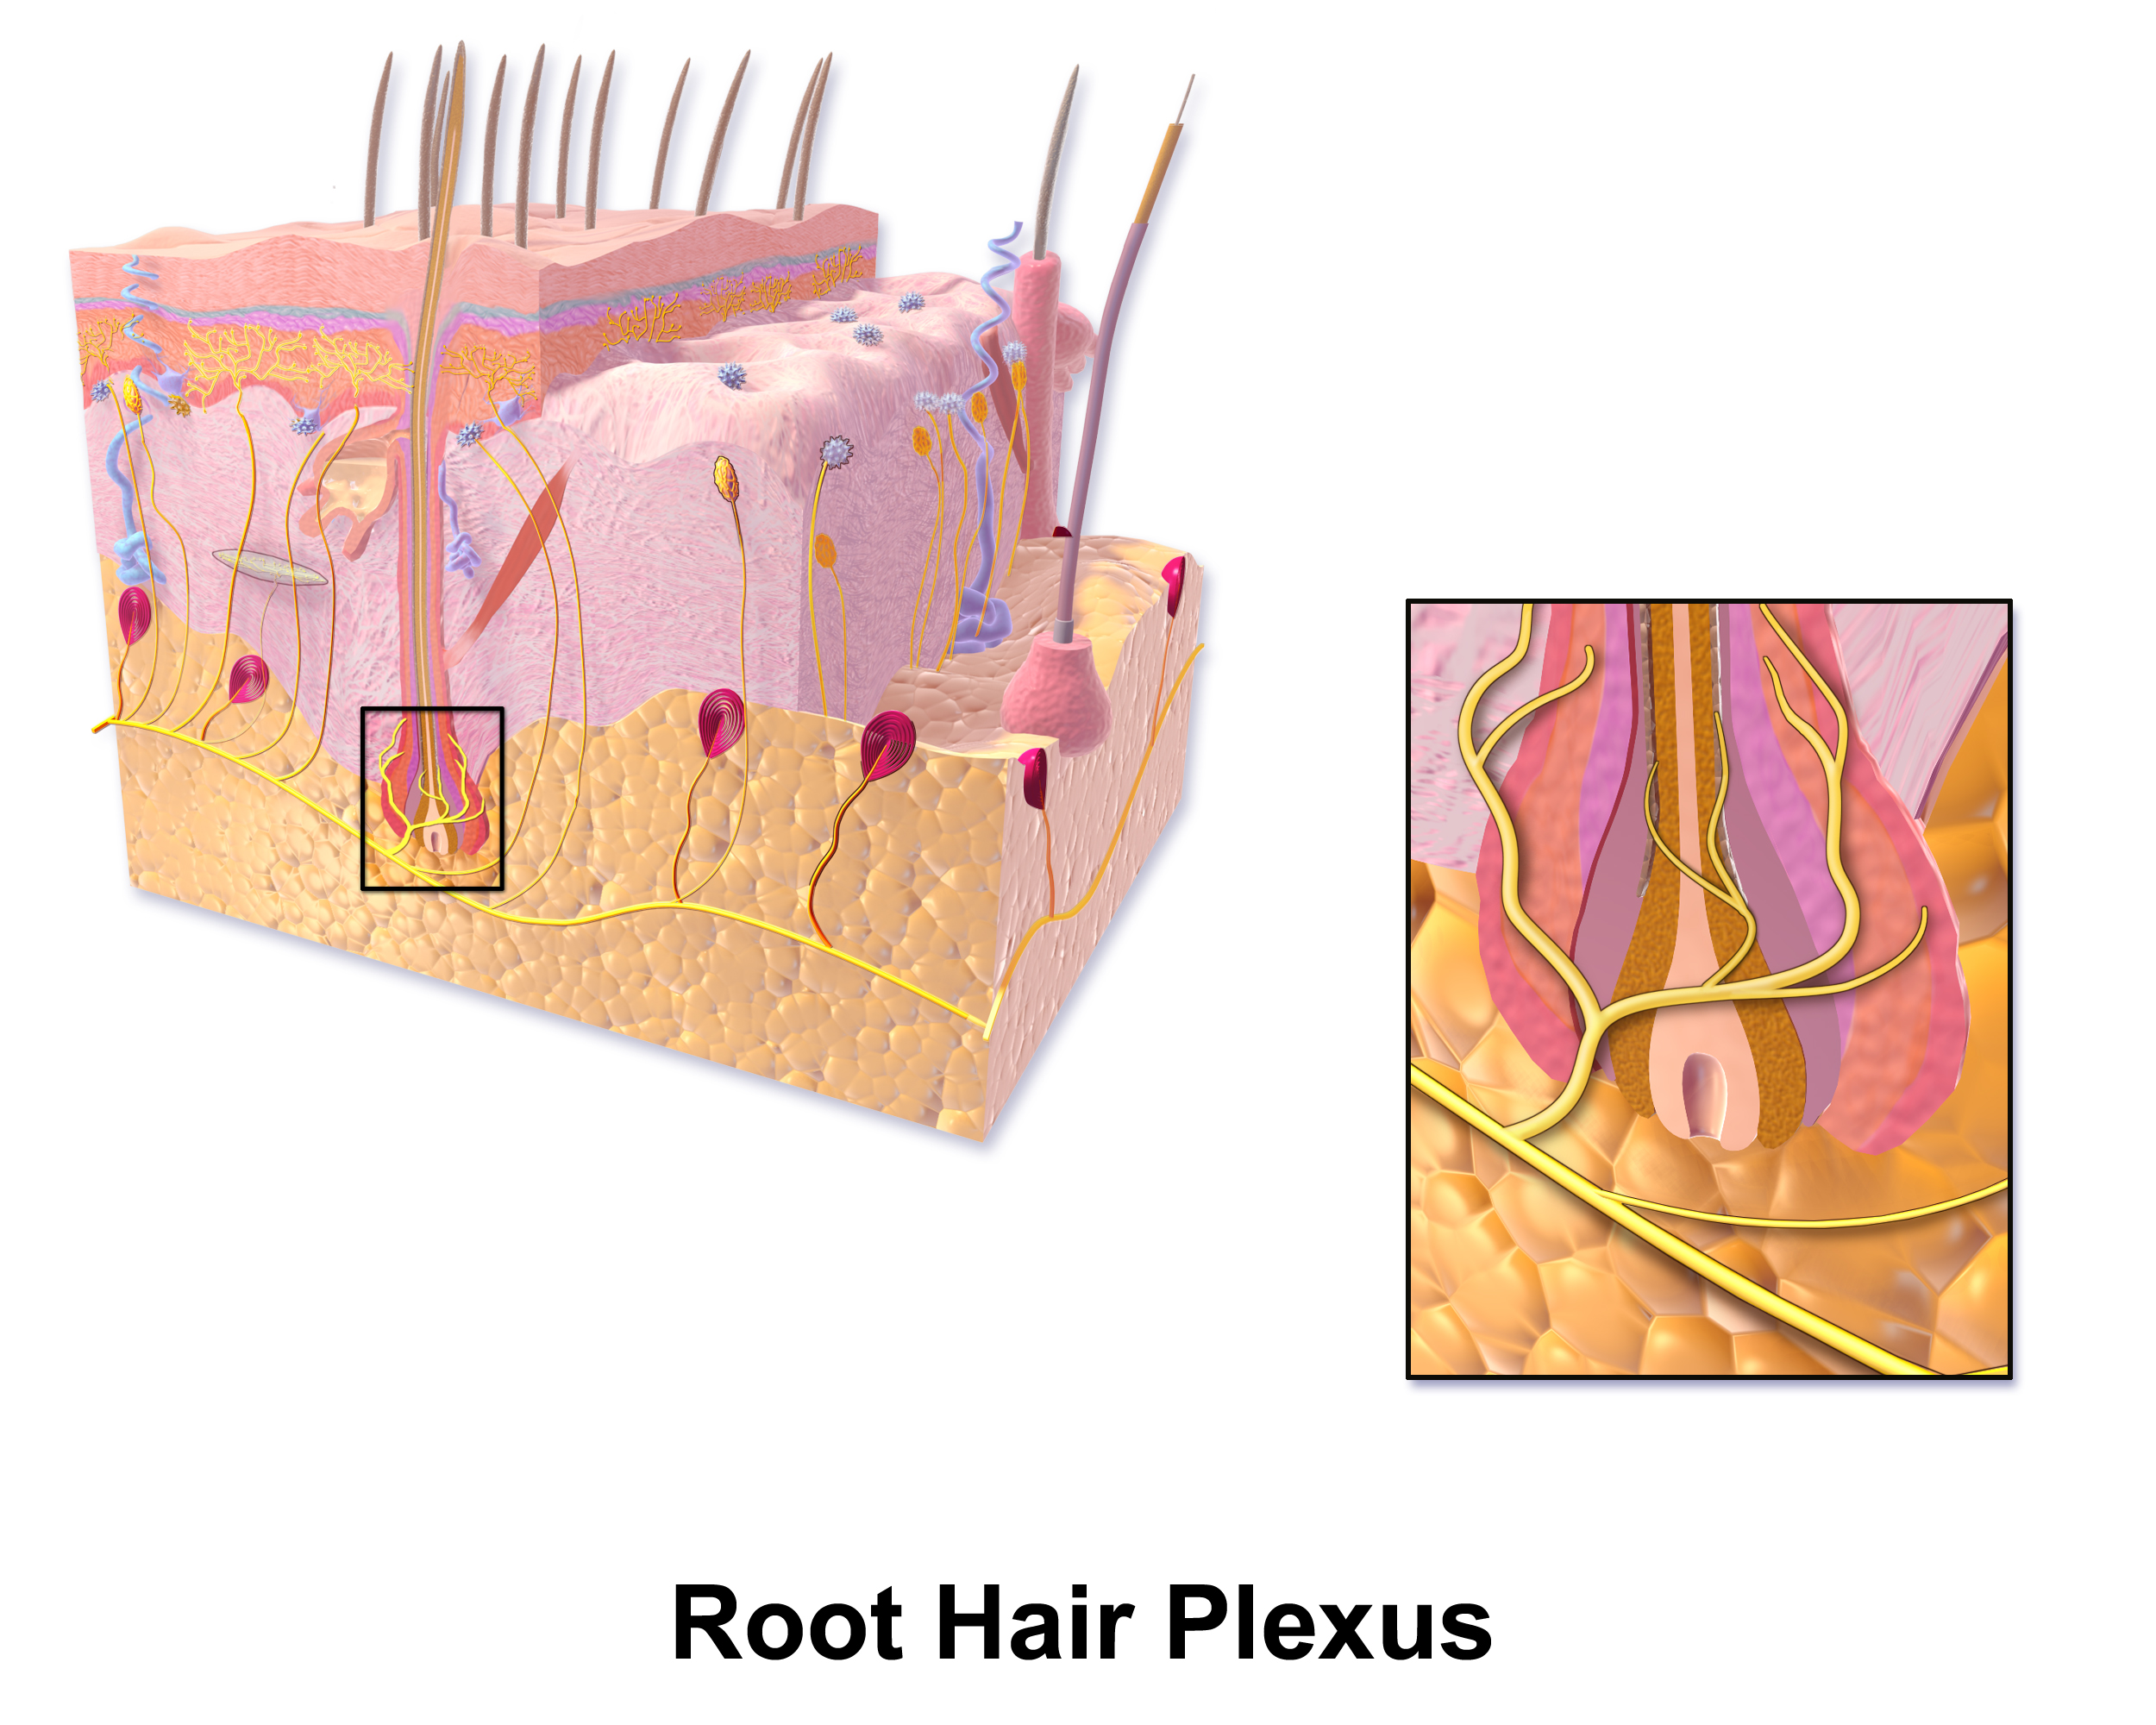 Hair plexus - Wikipedia